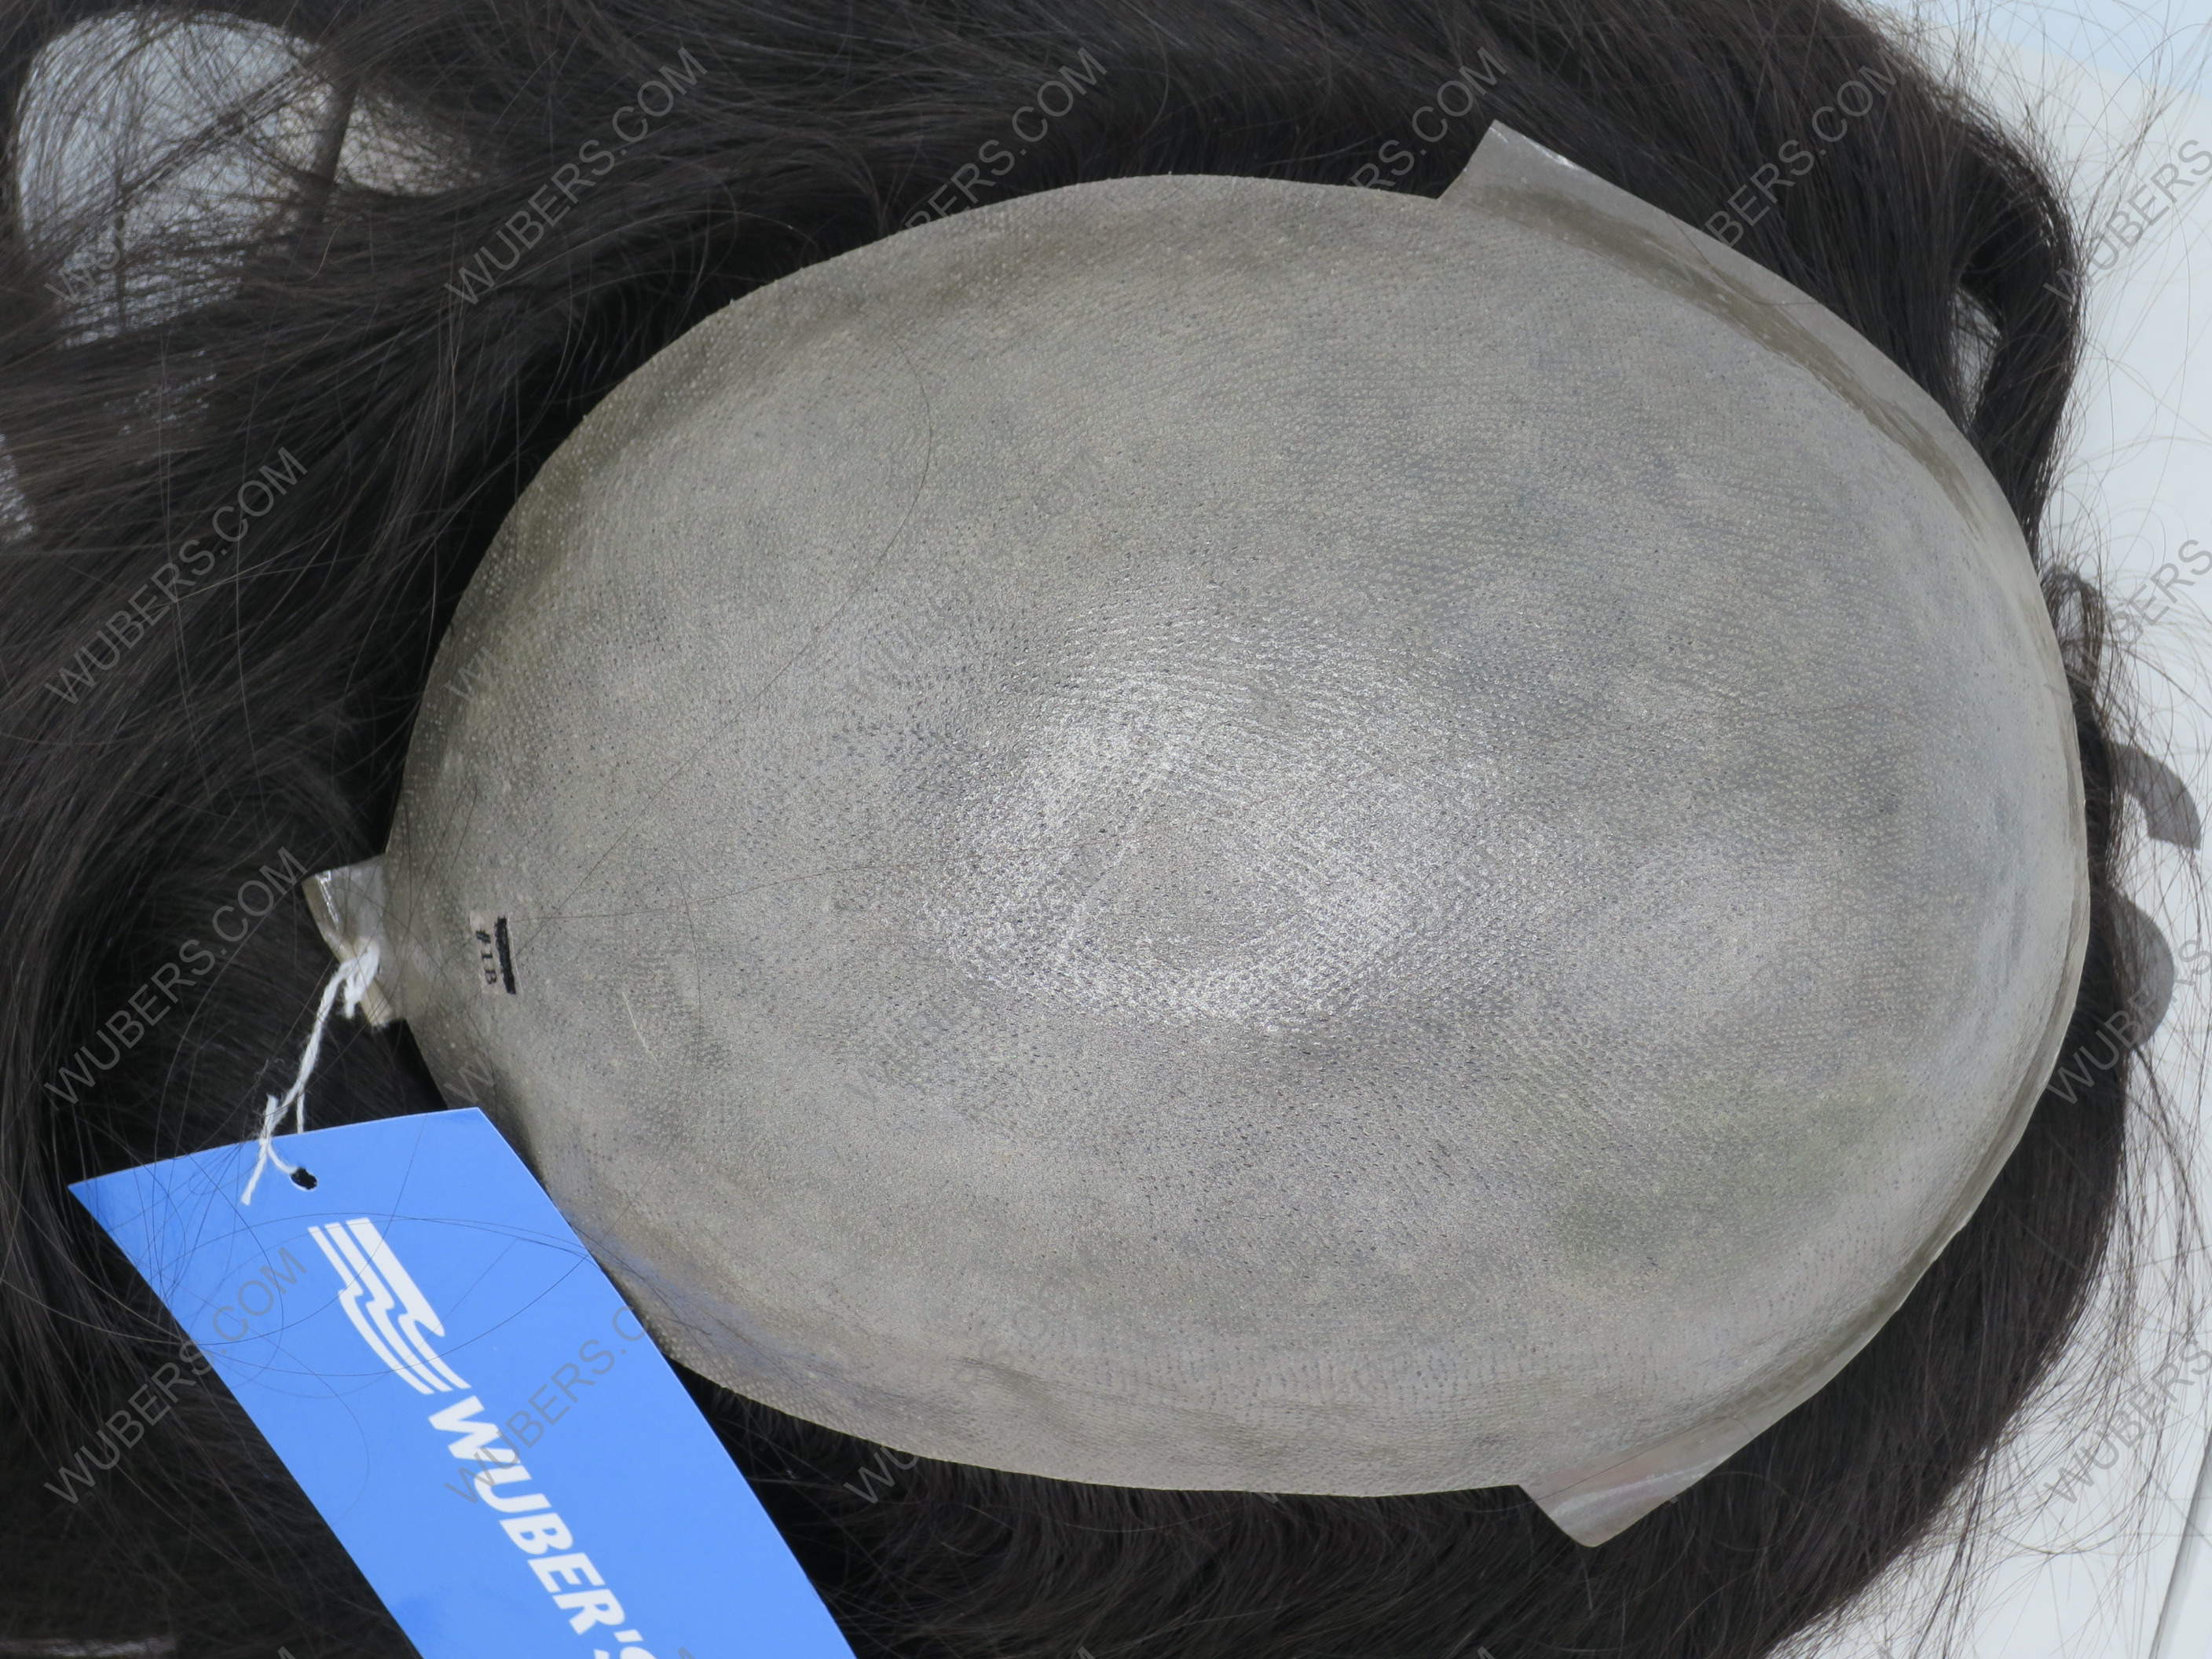 MALAGA Protesi  per Donna Uomo capelli veri naturali  remy hair vergini lunghezza 40 cm